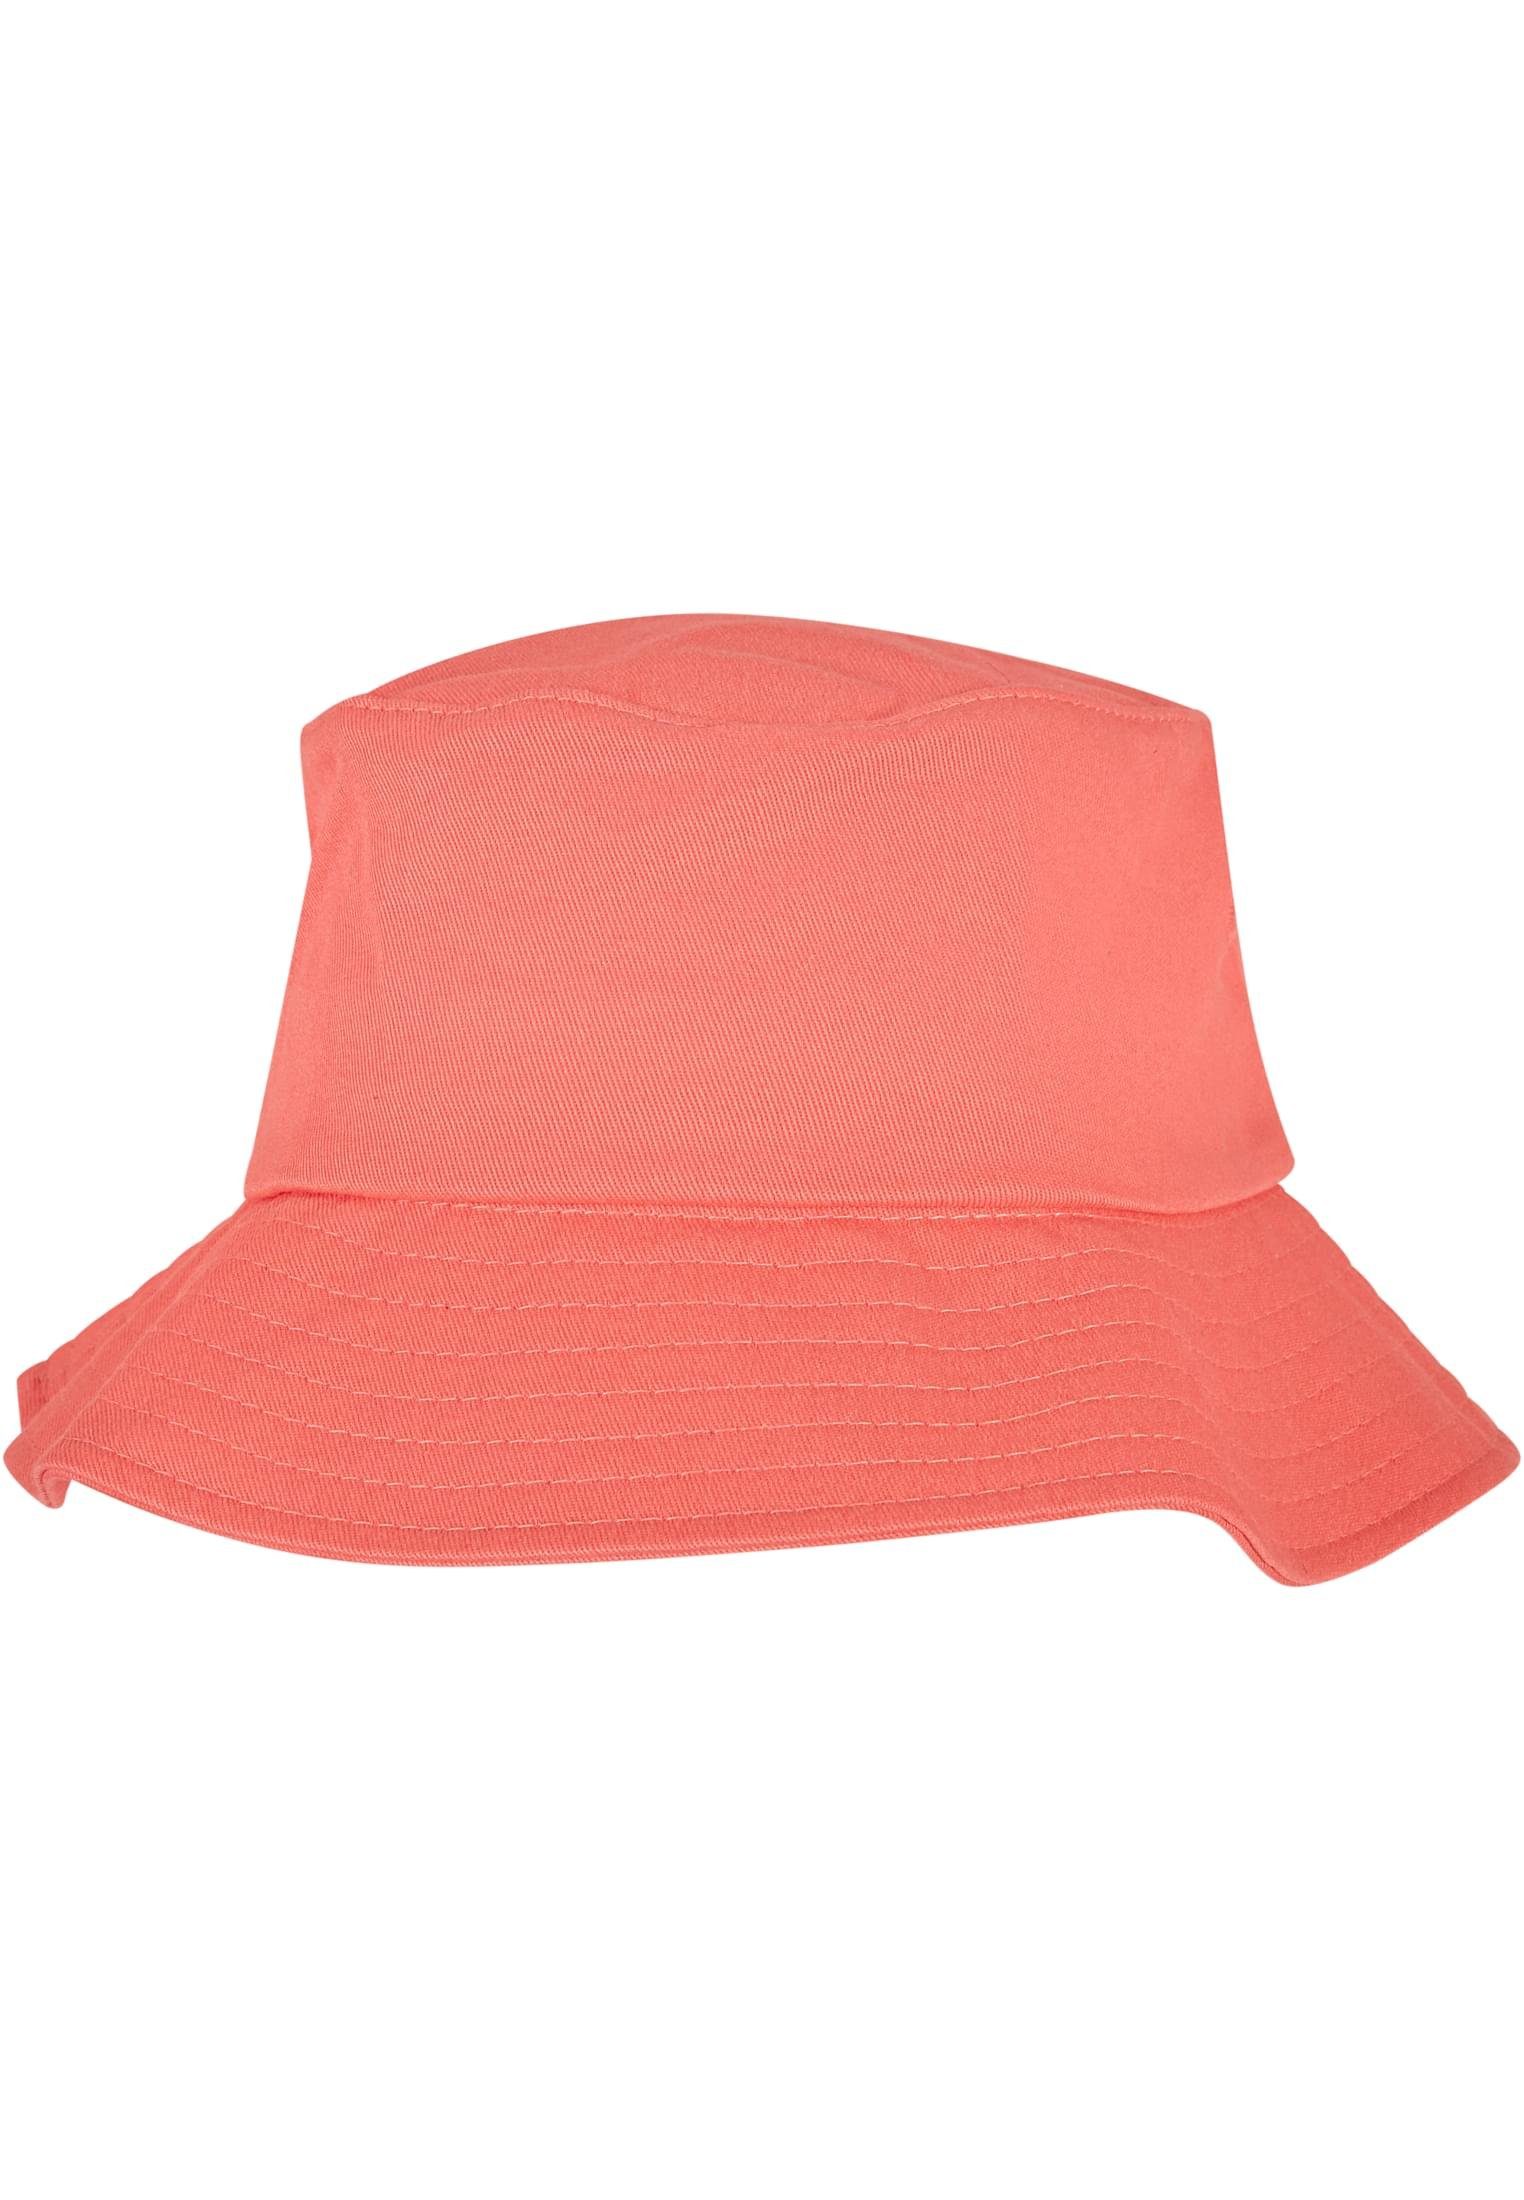 Twill Accessoires Flexfit Cotton Flex spicedcoral Hat Cap Bucket Flexfit